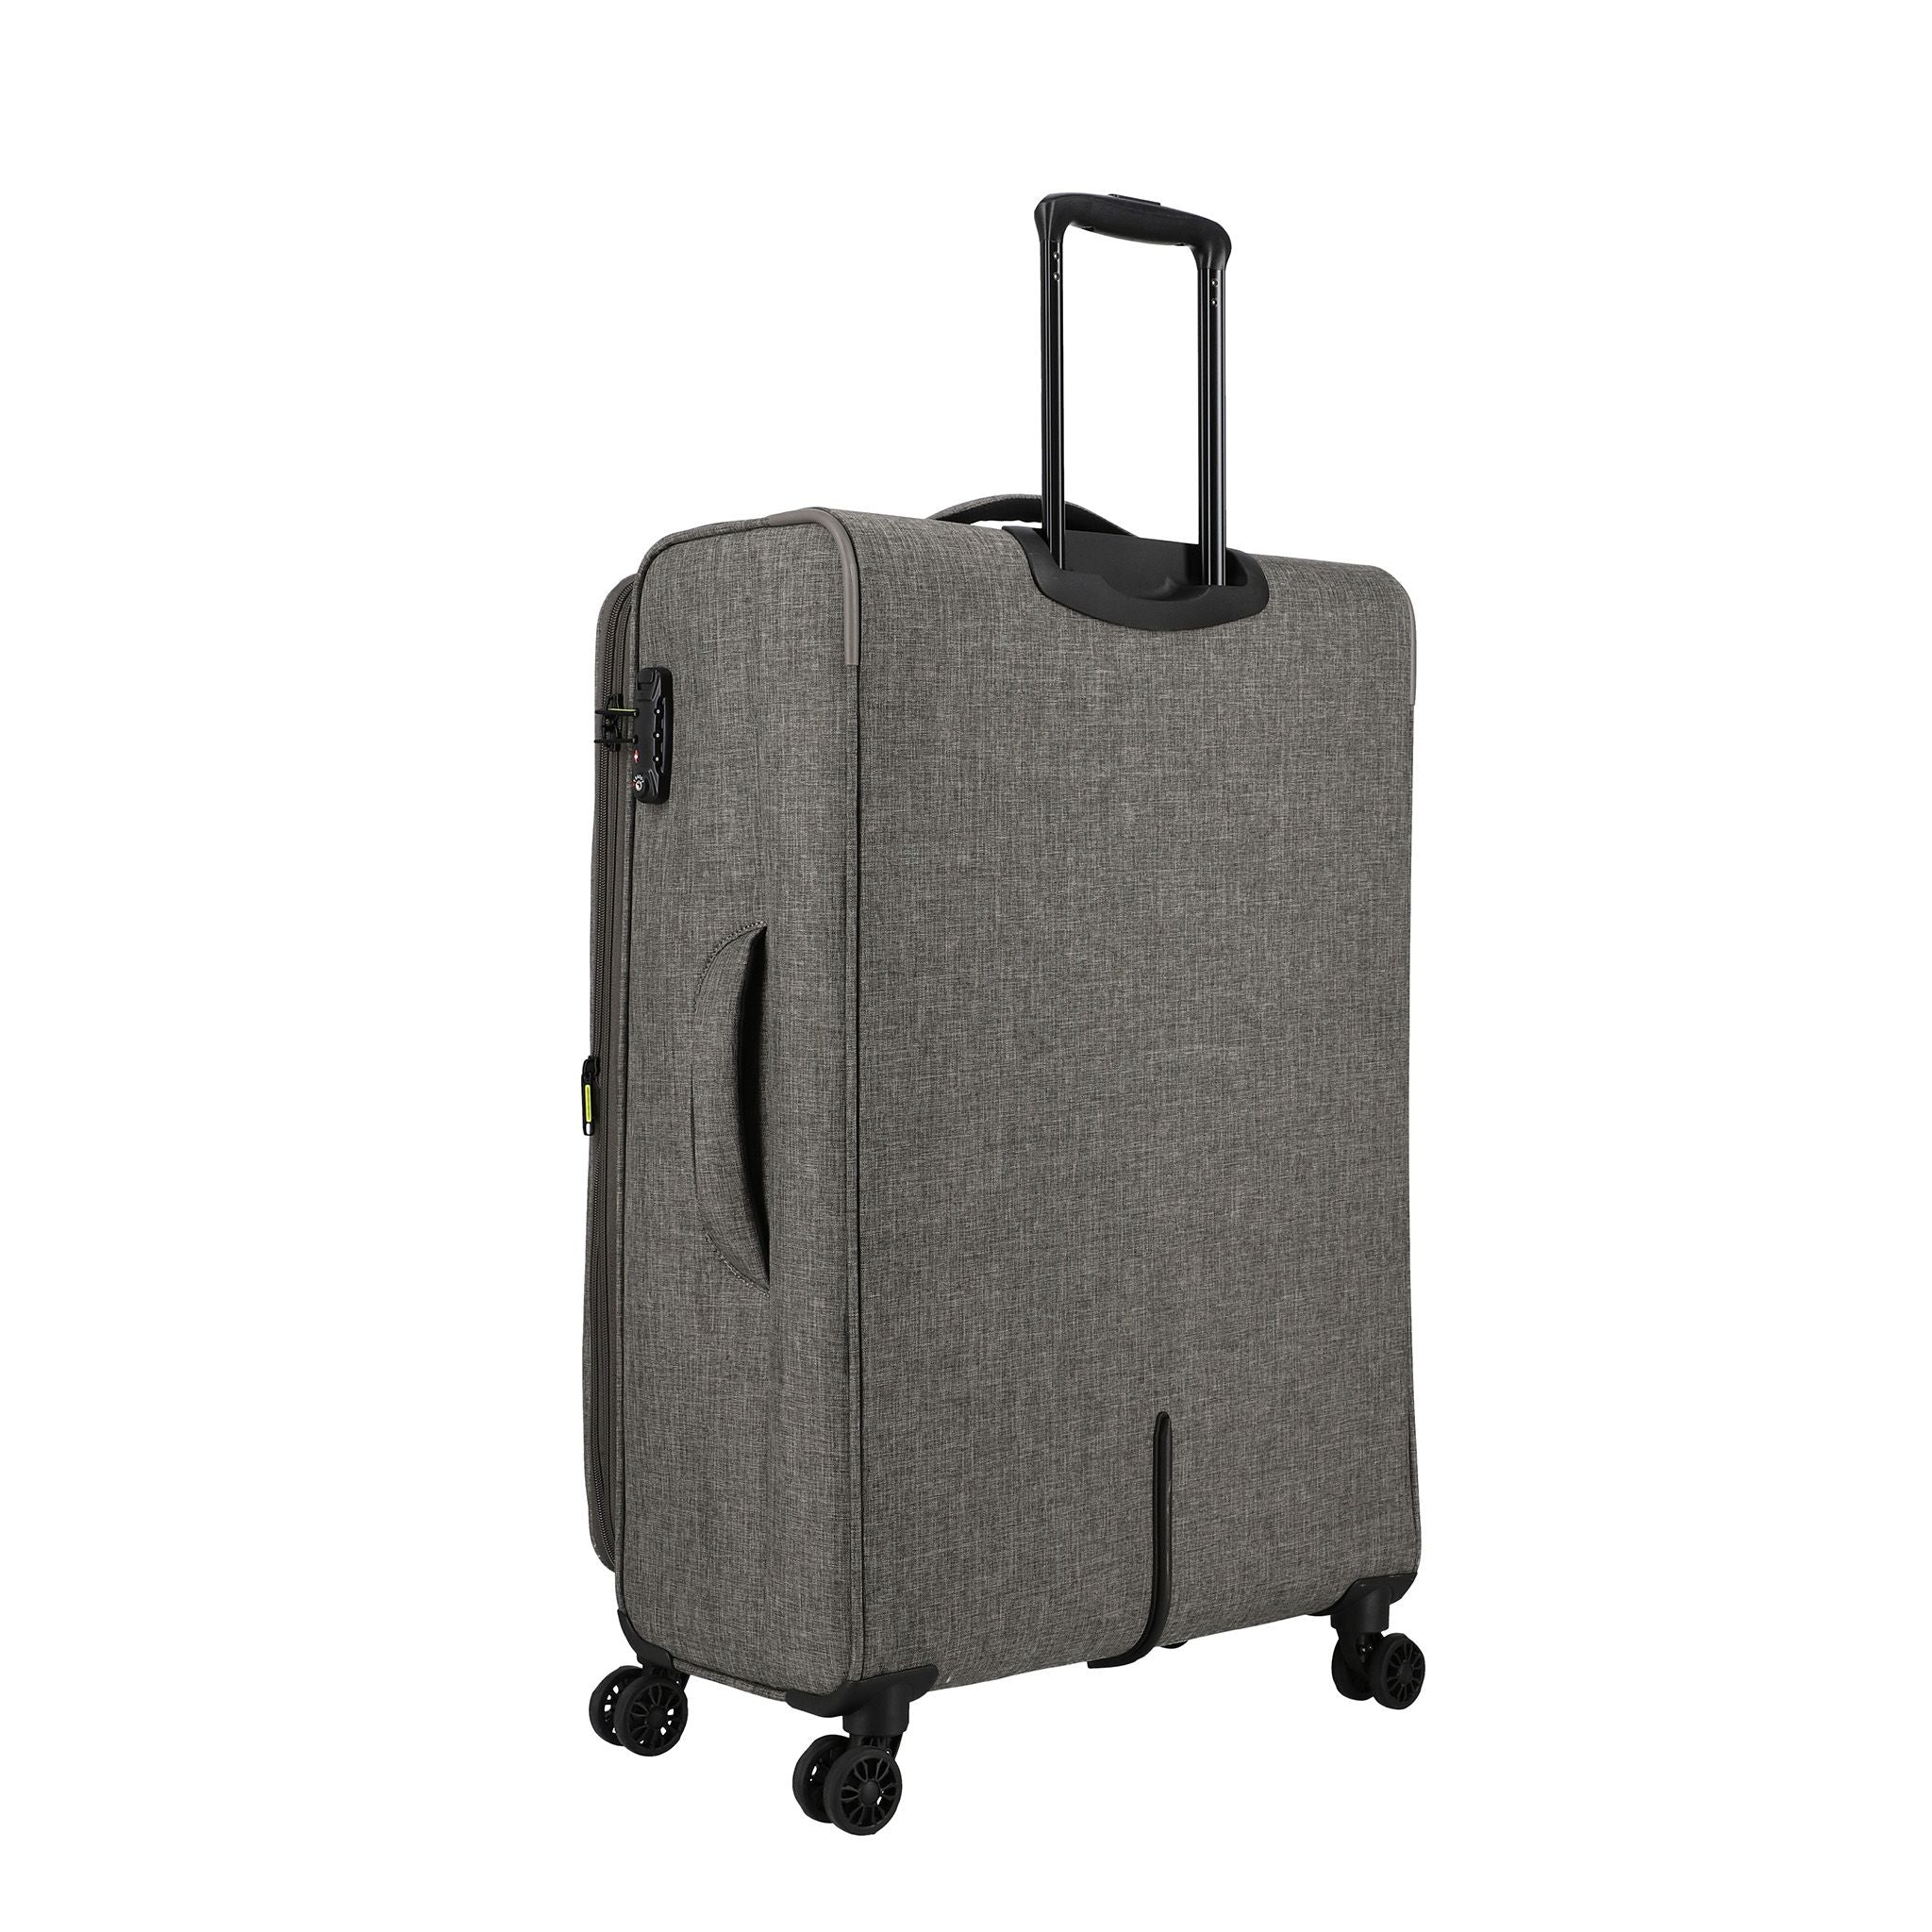 WHIZ - Soft Side 4W Luggage Trolley Case